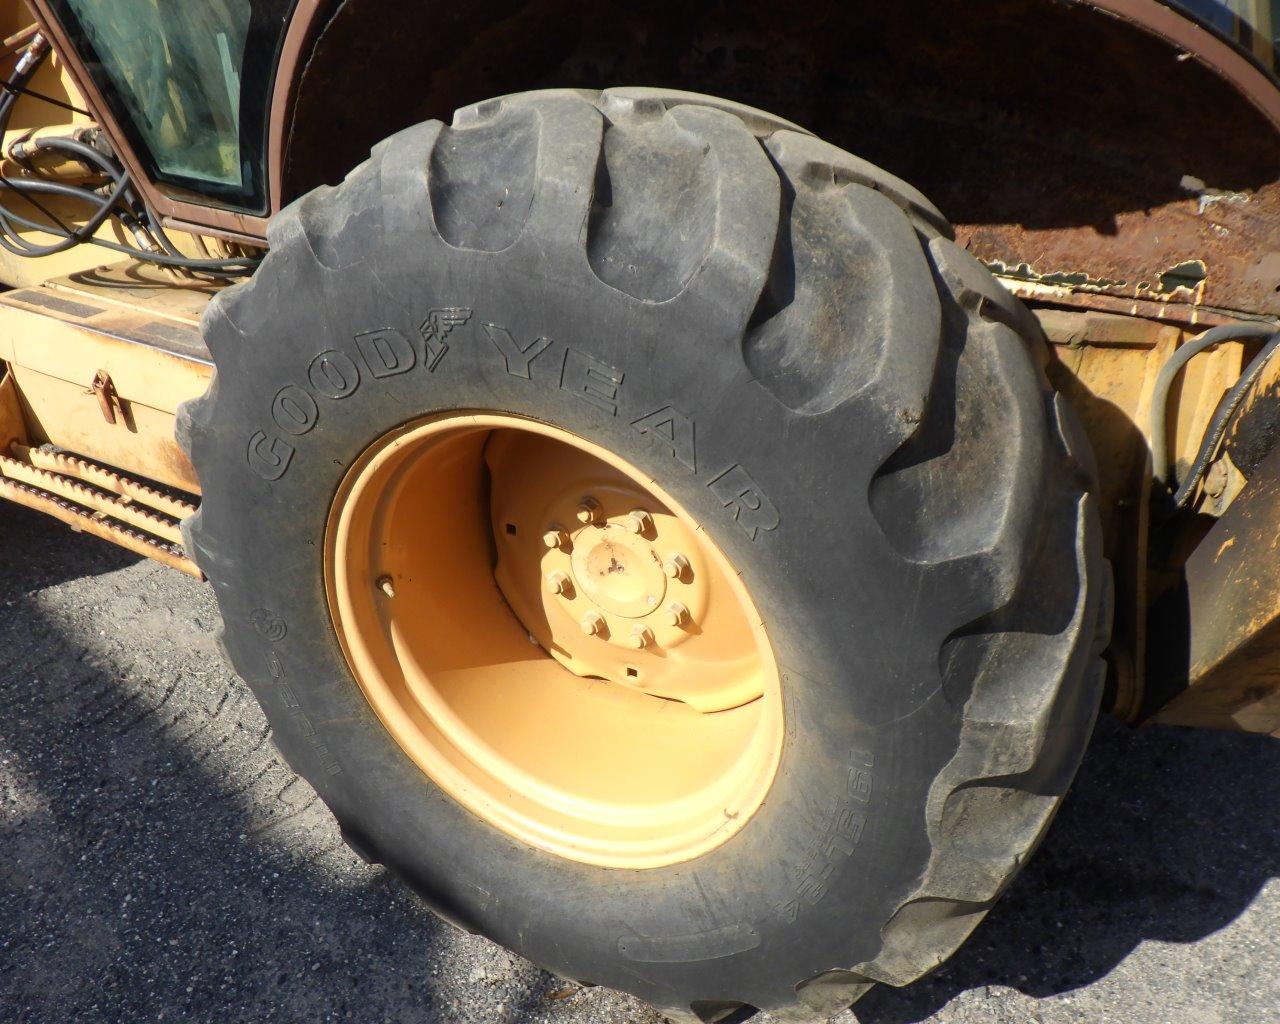 CASE 590 Turbo Wheel Loader Backhoe   EROPS   4 in 1 Bucket   Plow   4x4 s/